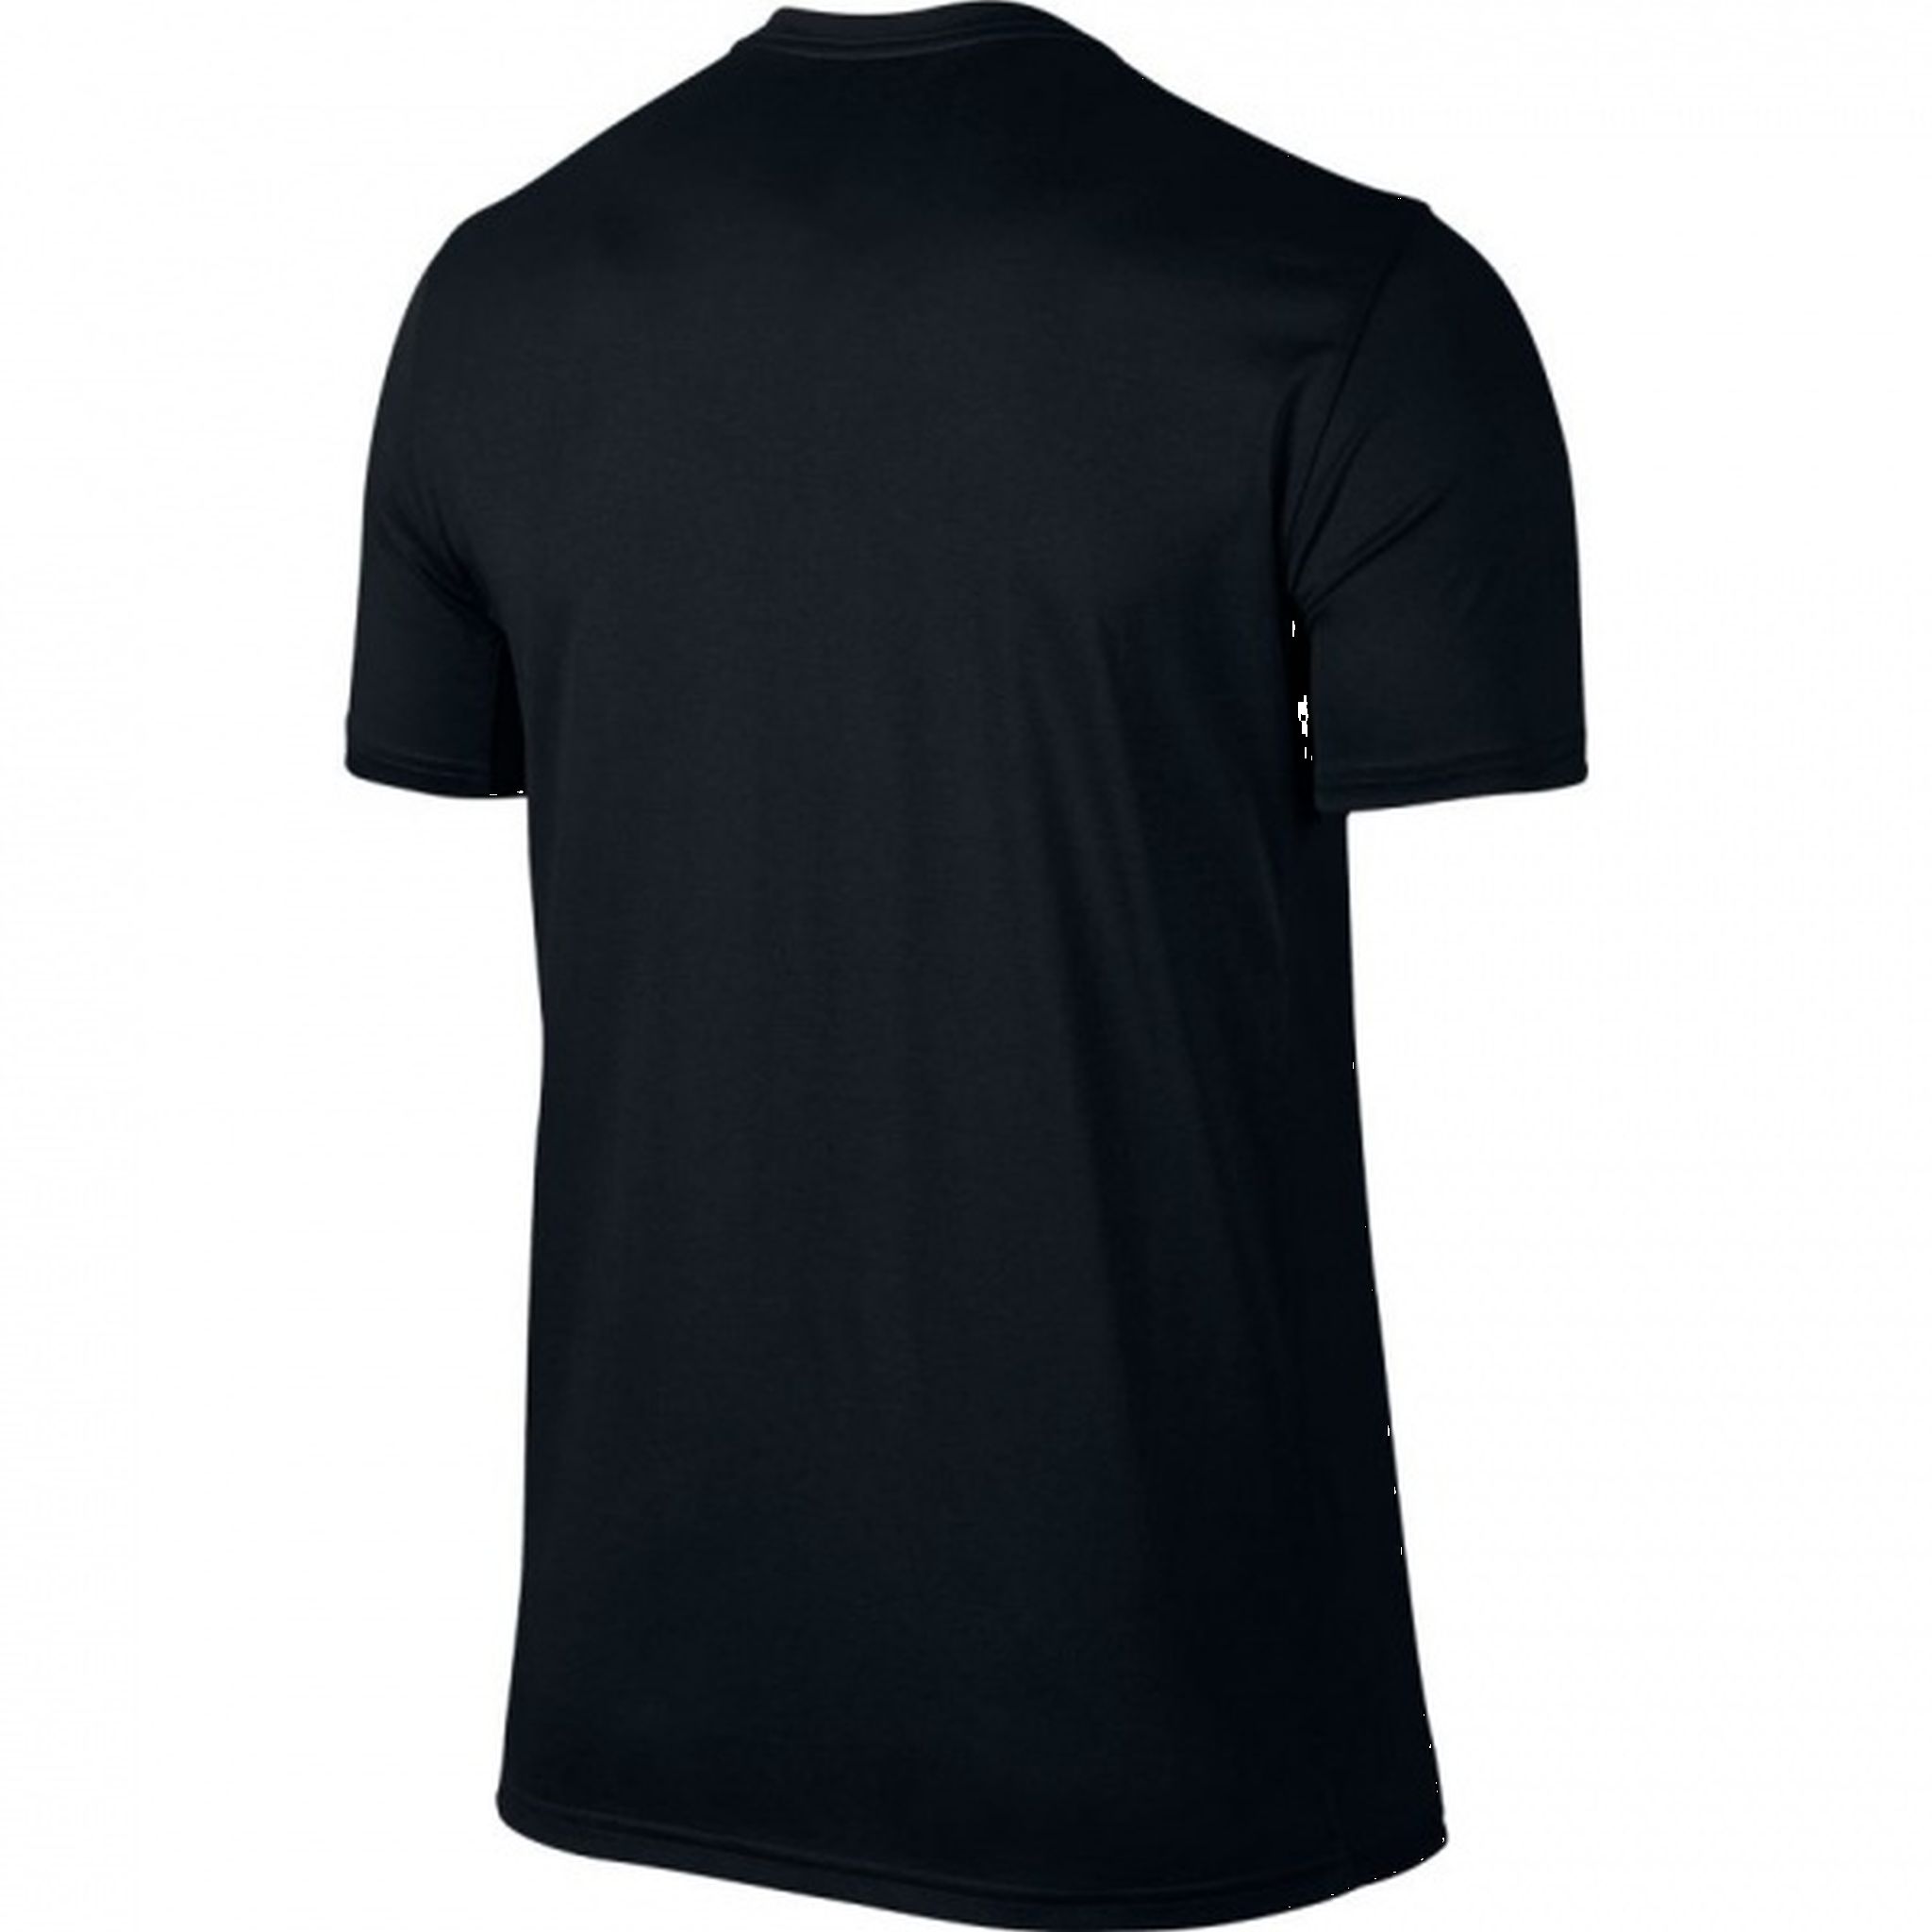 Nike Mens Legend 2.0 Dry Training T-Shirt